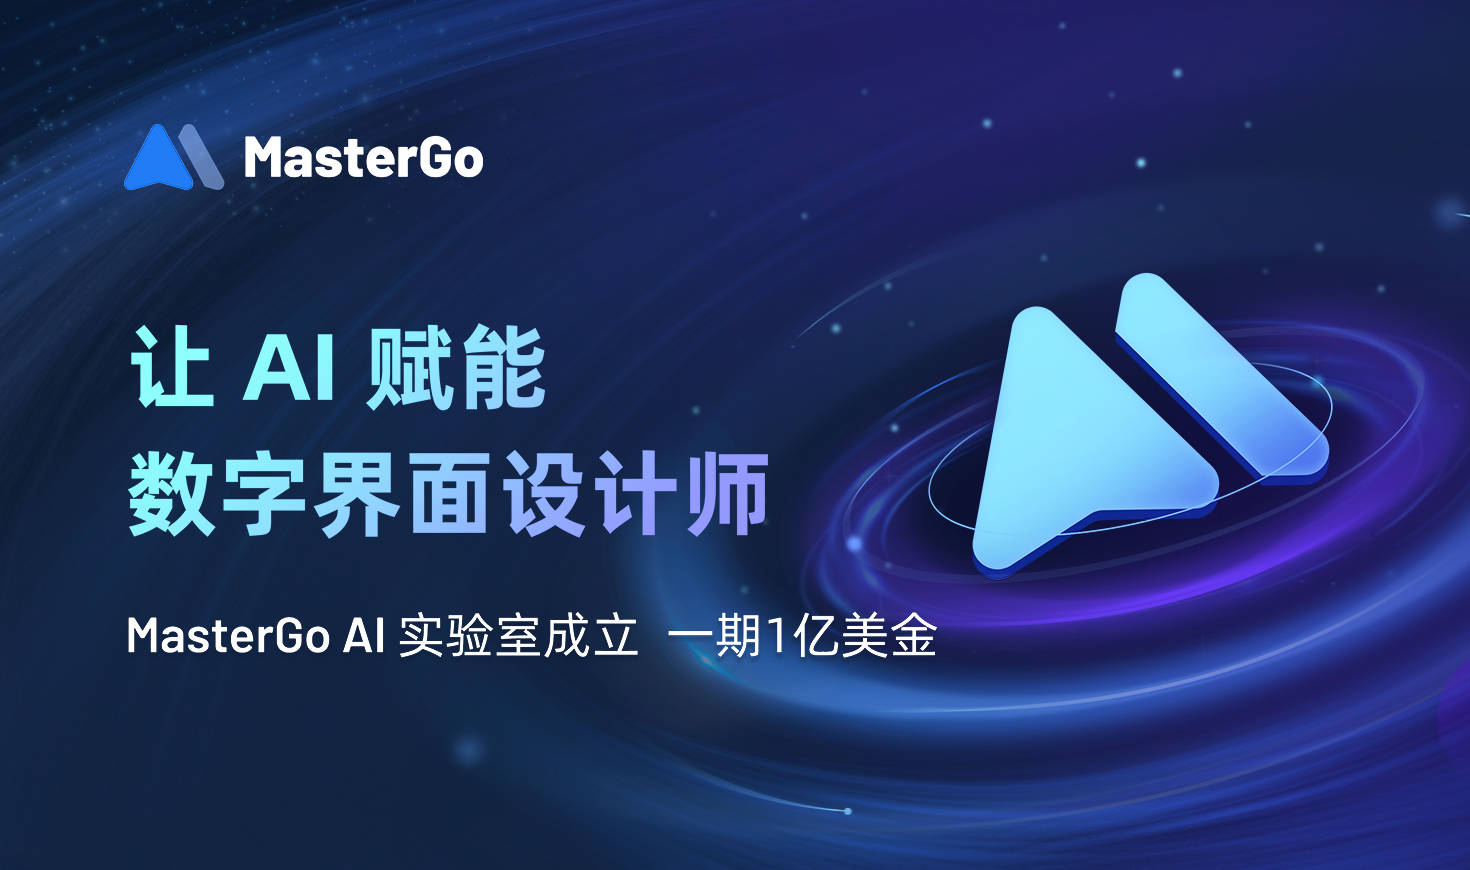 MasterGo成立AI實驗室，一期投入1億美金，讓AI賦能數字界面設計師